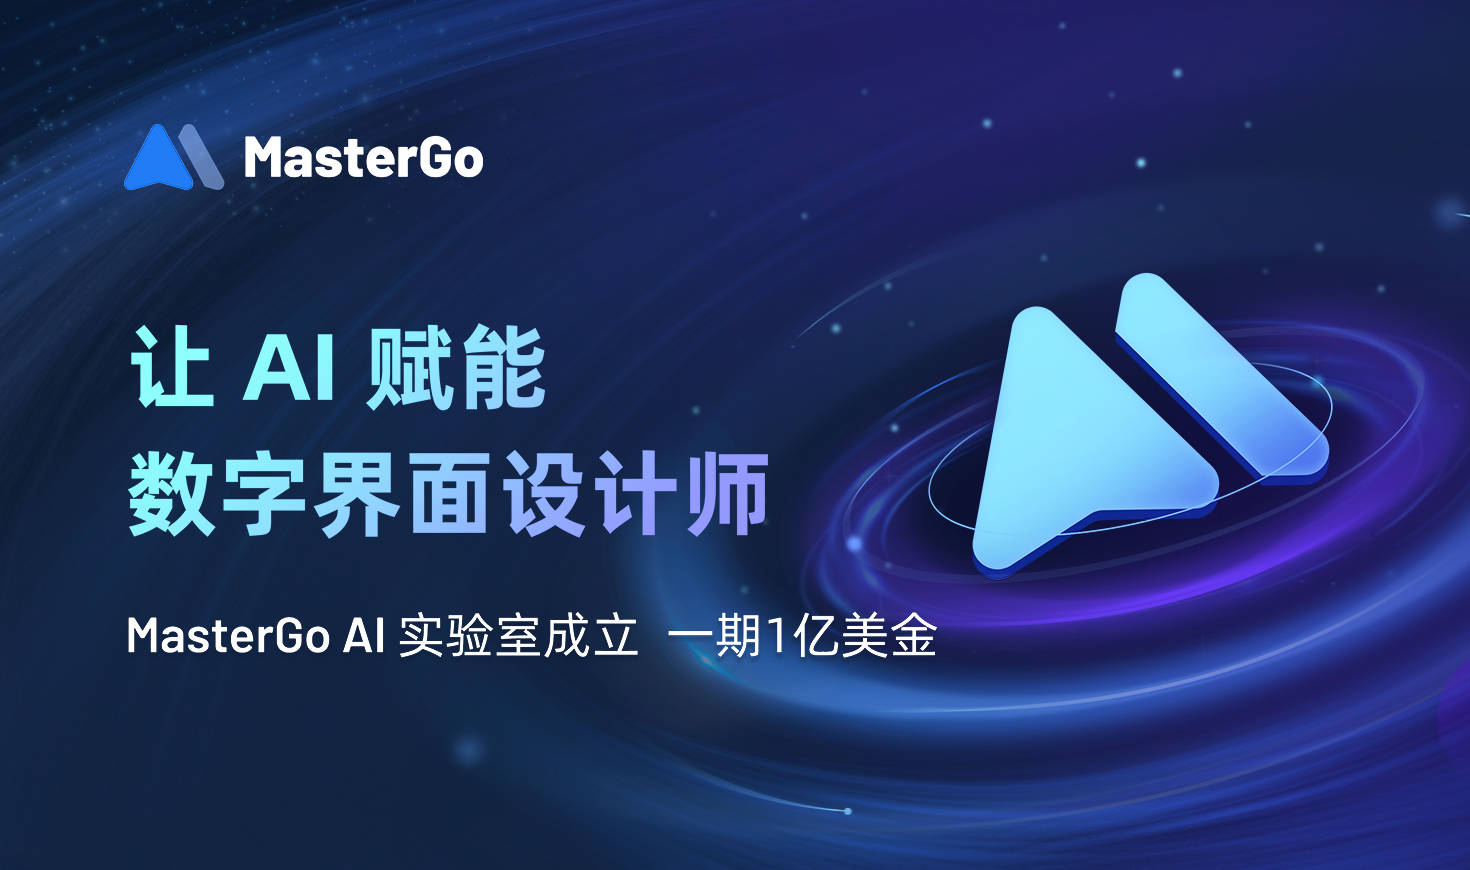 MasterGo成立AI實驗室，一期投入1億美金，讓AI賦能數字界面設計師